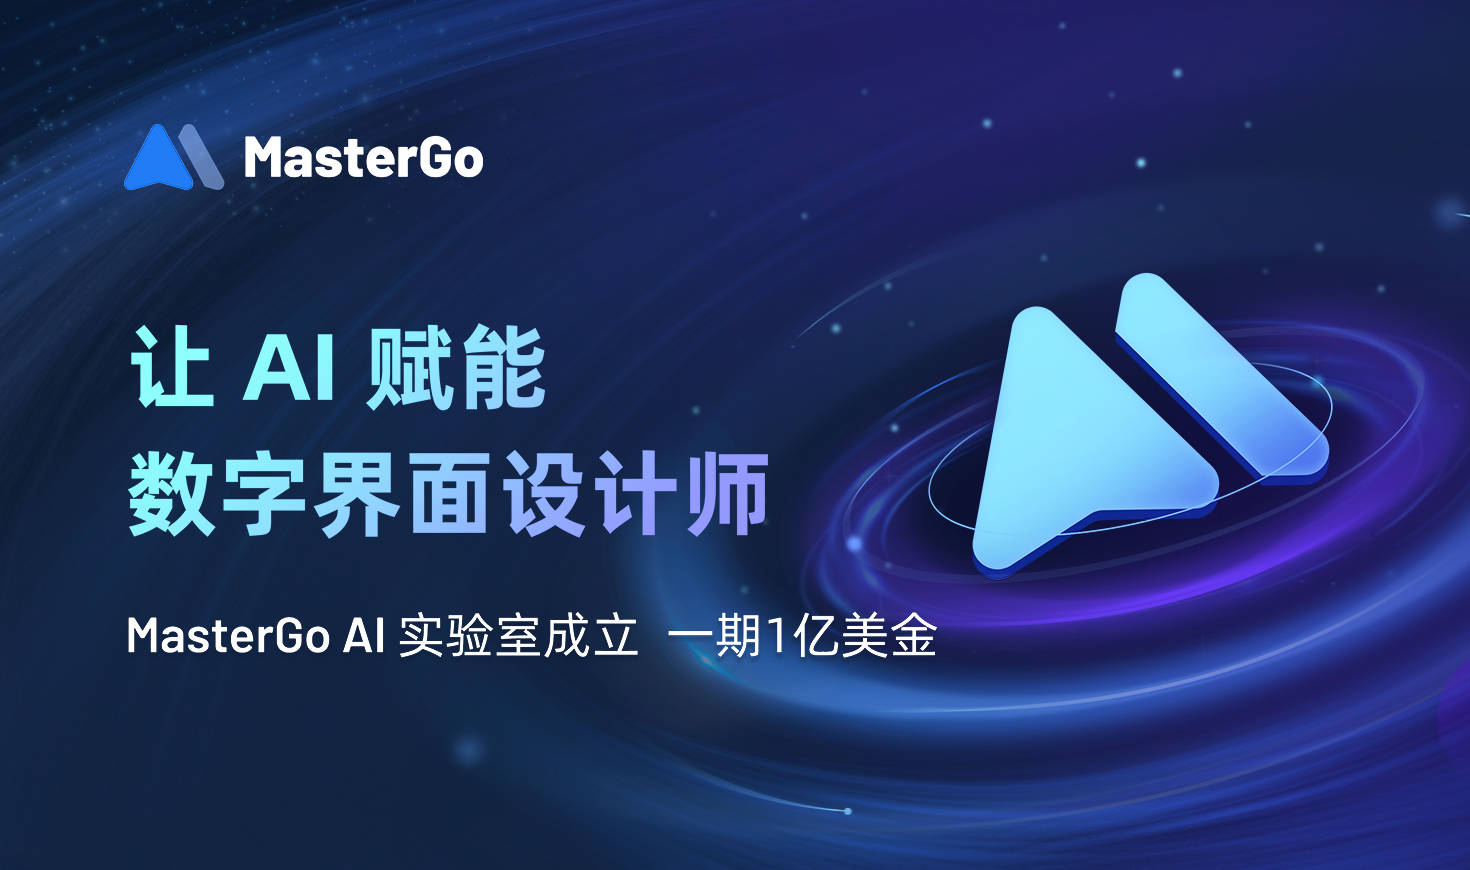 MasterGo成立AI實驗室，一期投入1億美金，讓AI賦能數字界面設計師